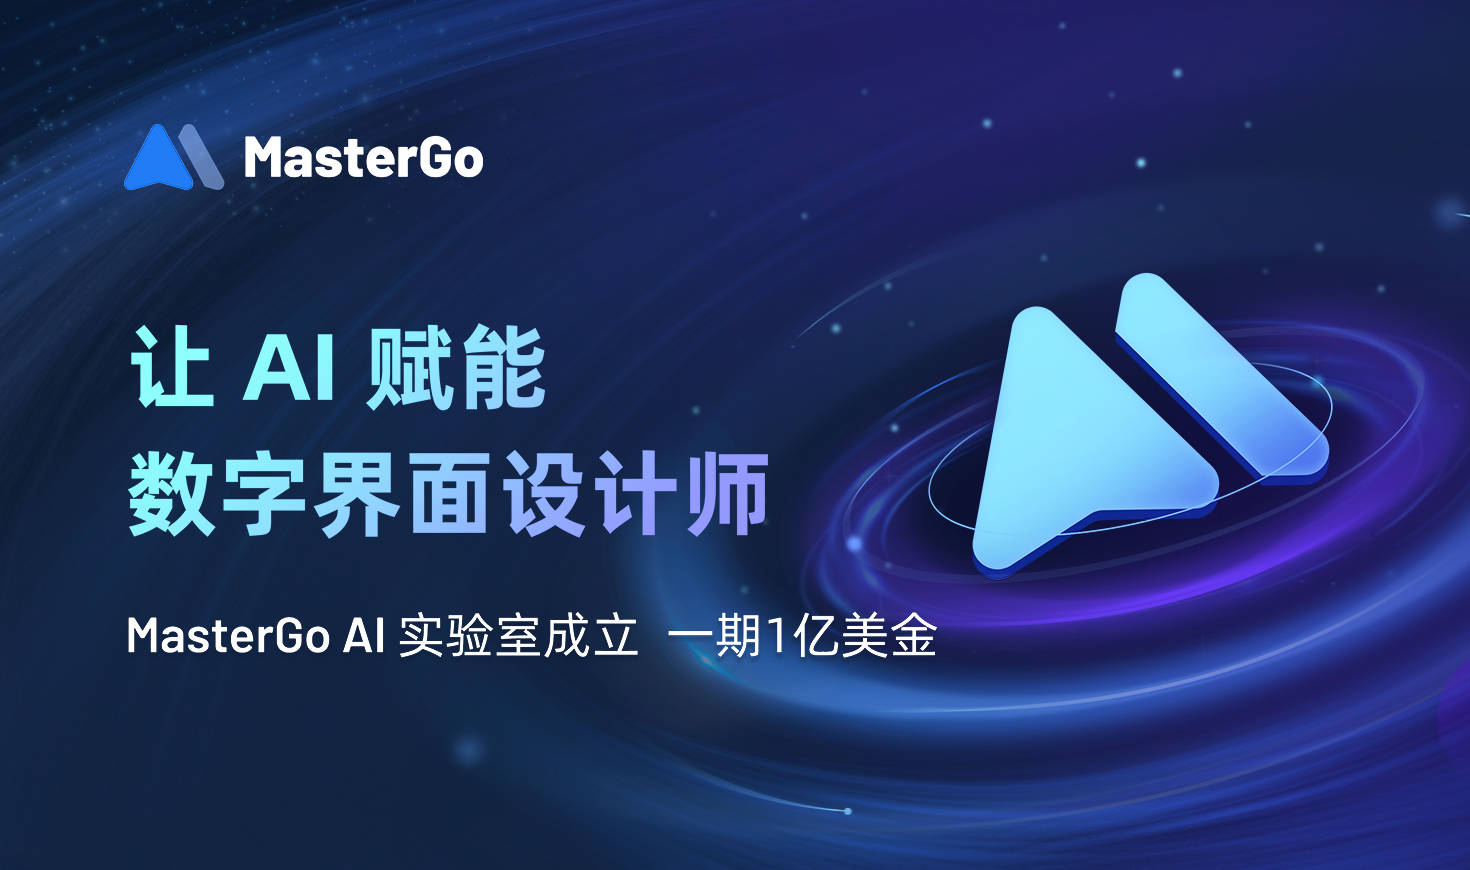 MasterGo成立AI實驗室，一期投入1億美金，讓AI賦能數字界面設計師